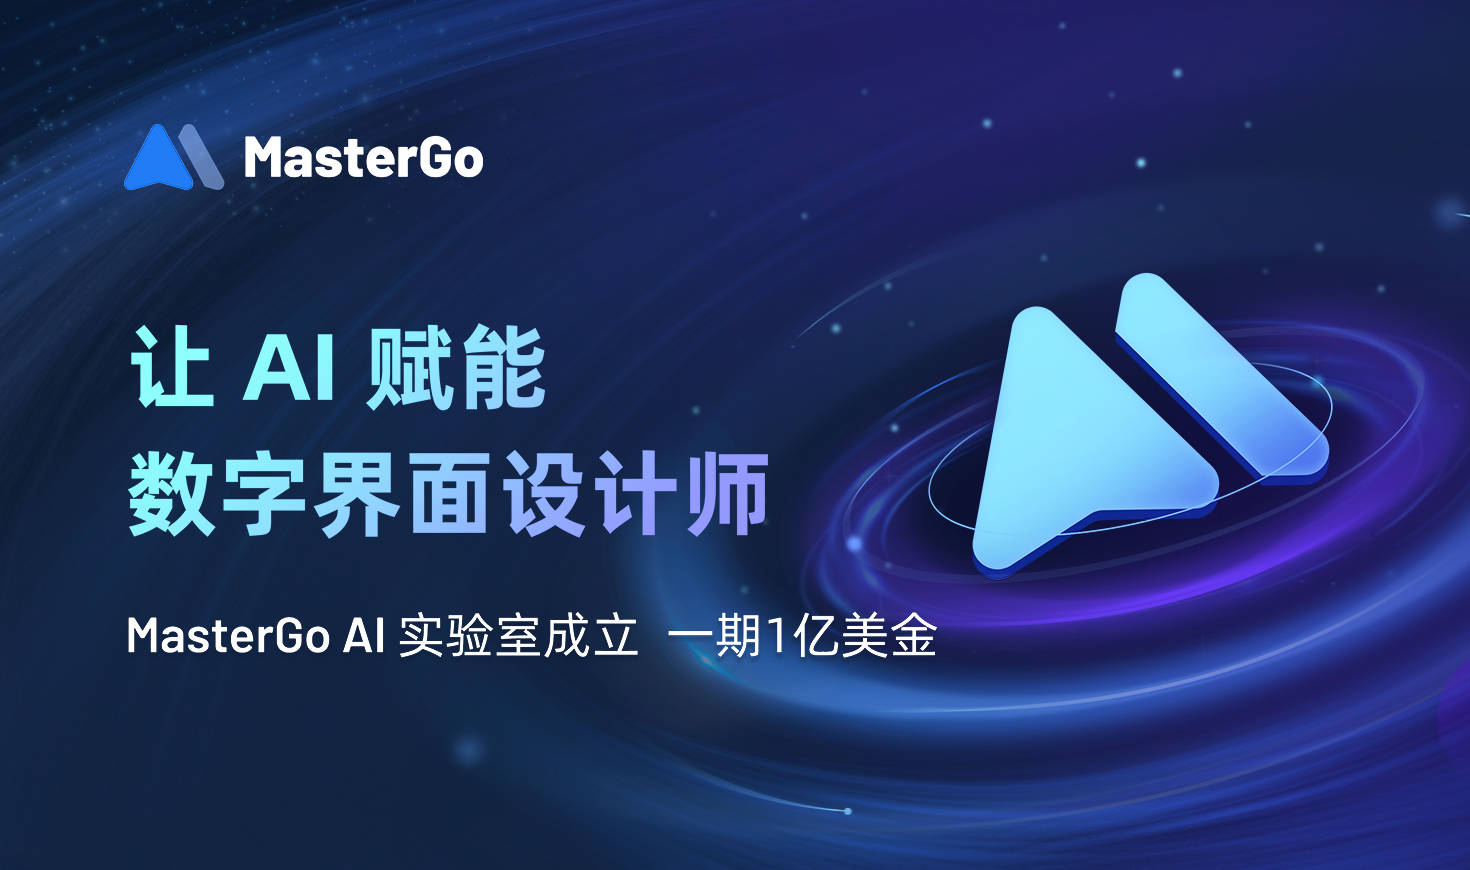 MasterGo成立AI實驗室，一期投入1億美金，讓AI賦能數字界面設計師